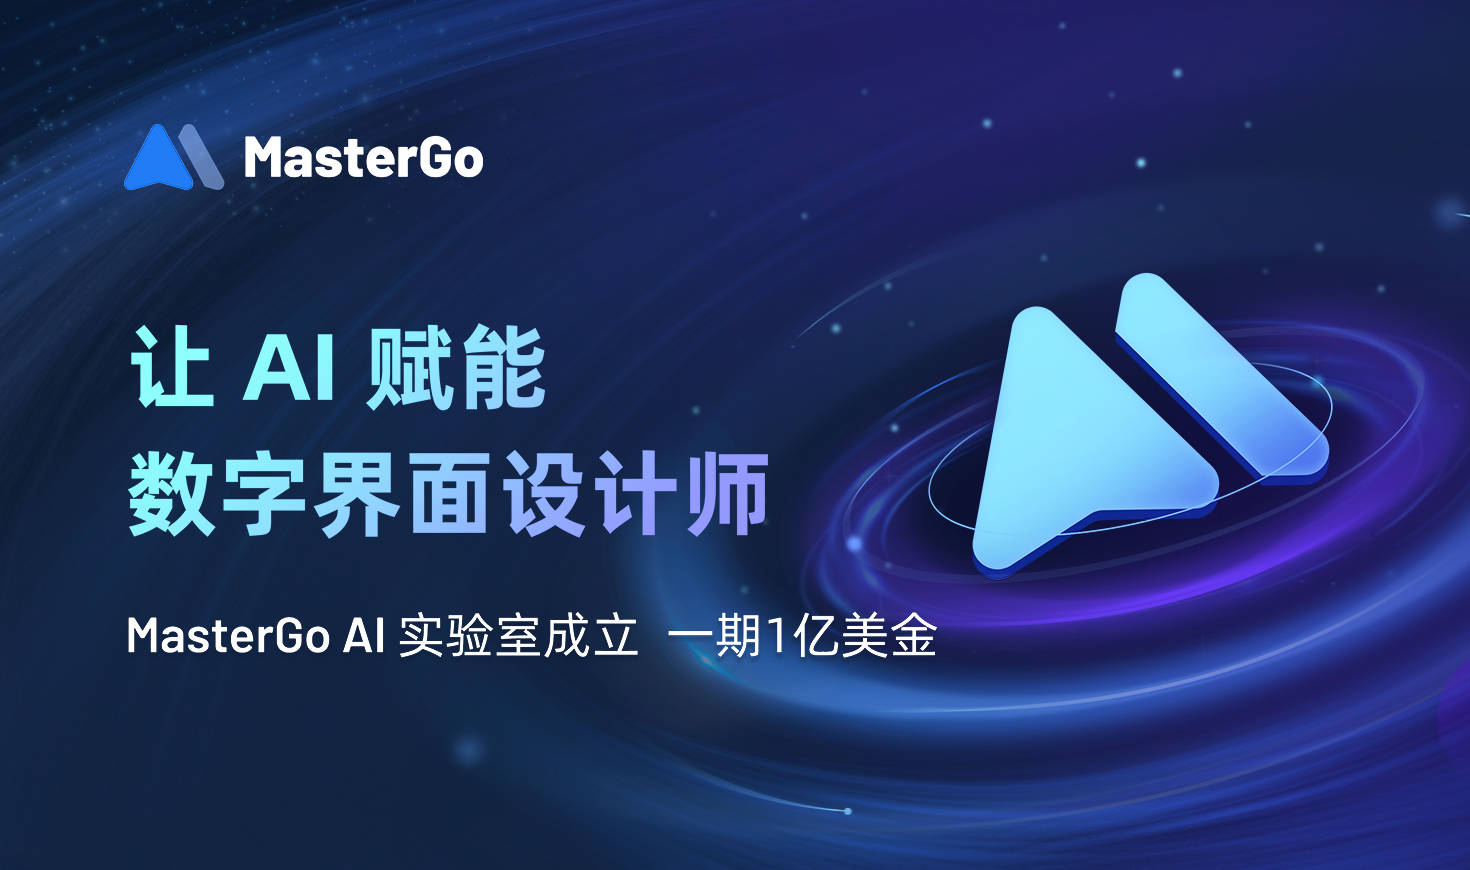 MasterGo成立AI實驗室，一期投入1億美金，讓AI賦能數字界面設計師